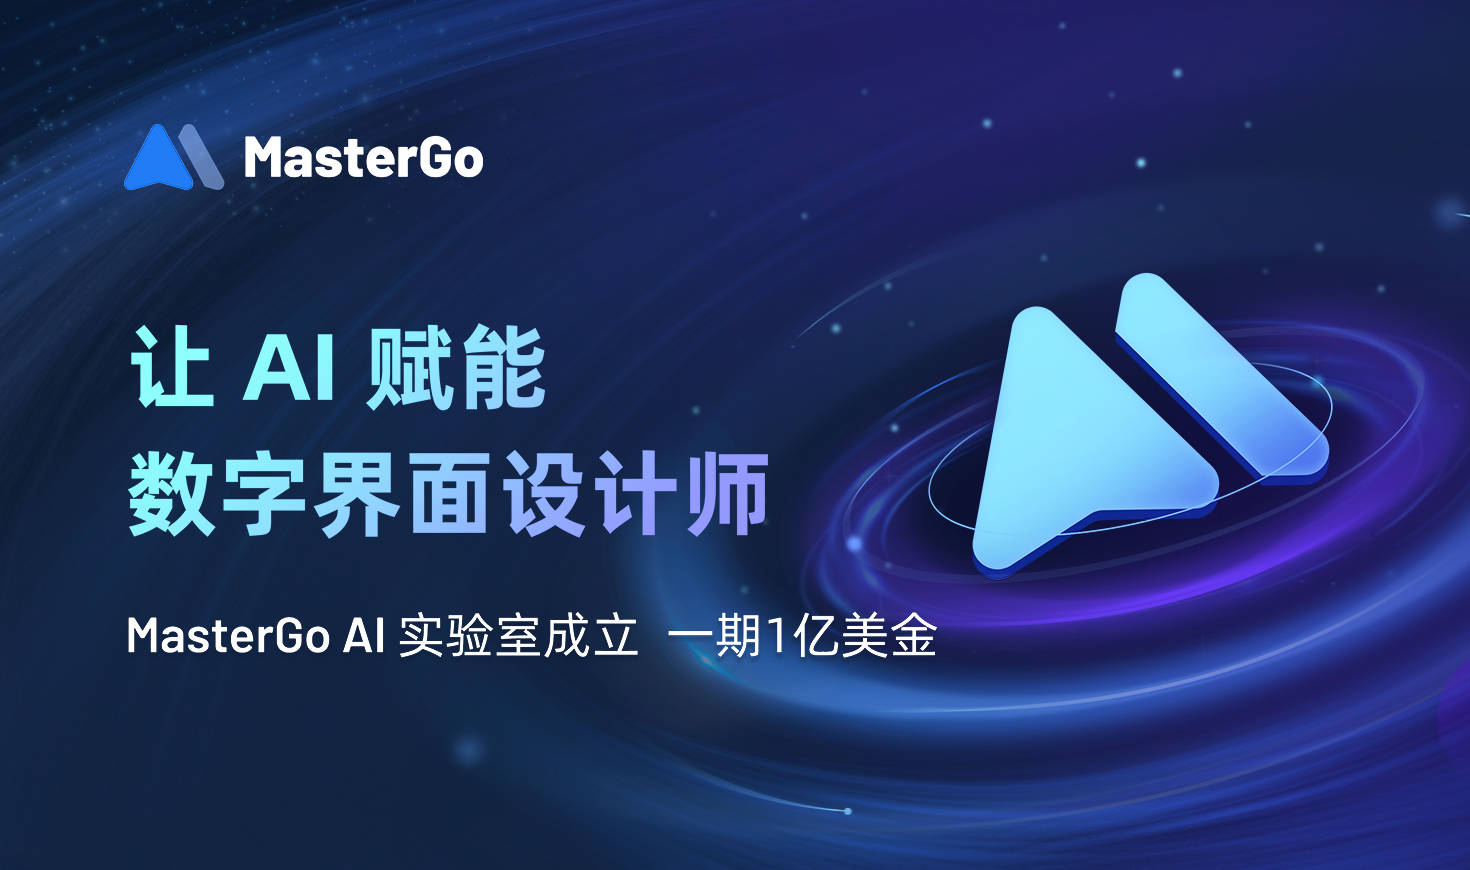 MasterGo成立AI實驗室，一期投入1億美金，讓AI賦能數字界面設計師